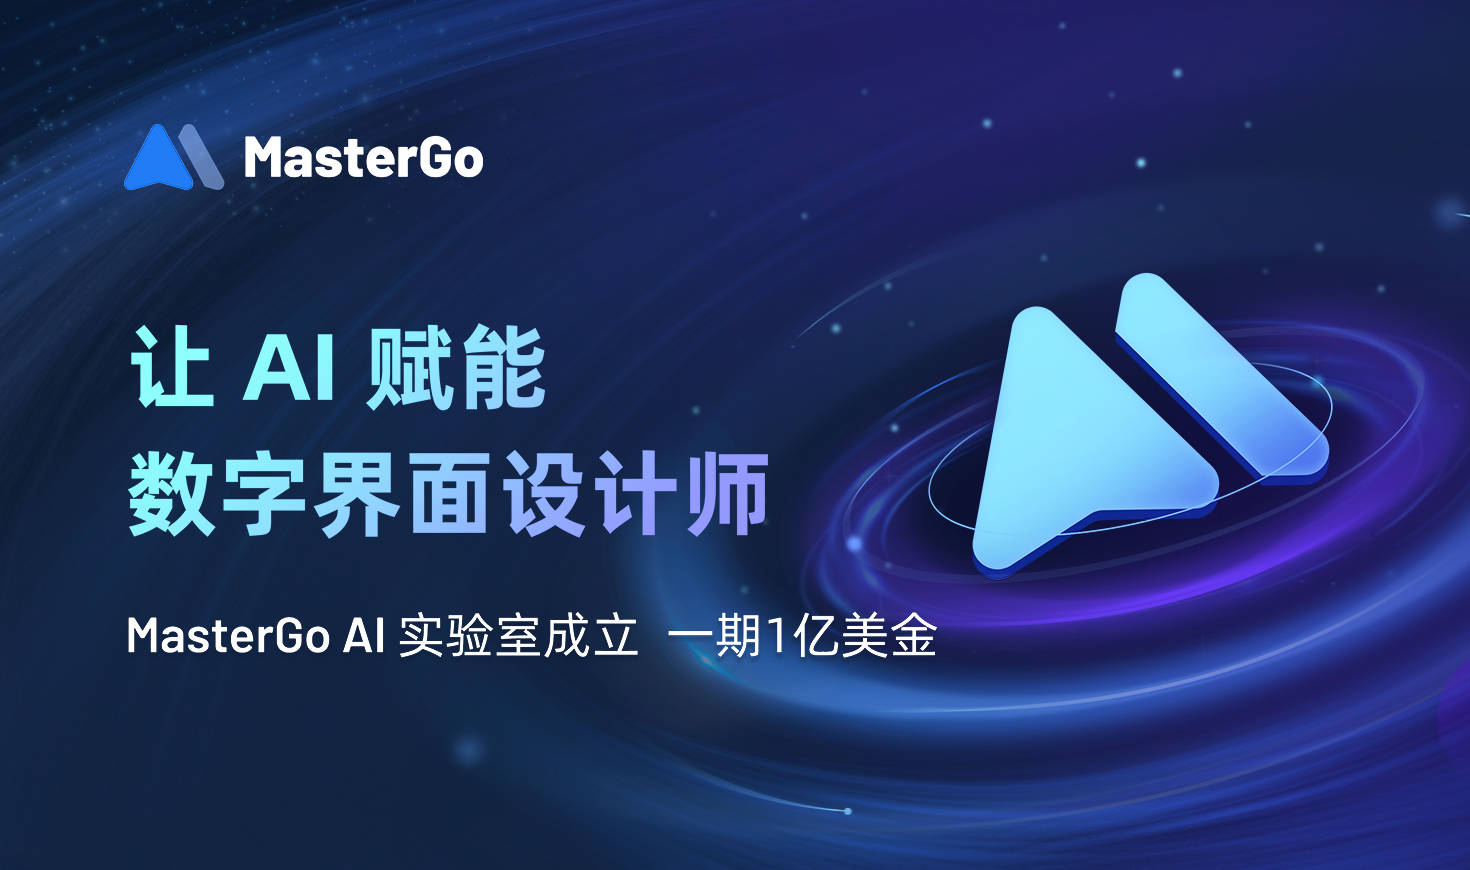 MasterGo成立AI實驗室，一期投入1億美金，讓AI賦能數字界面設計師